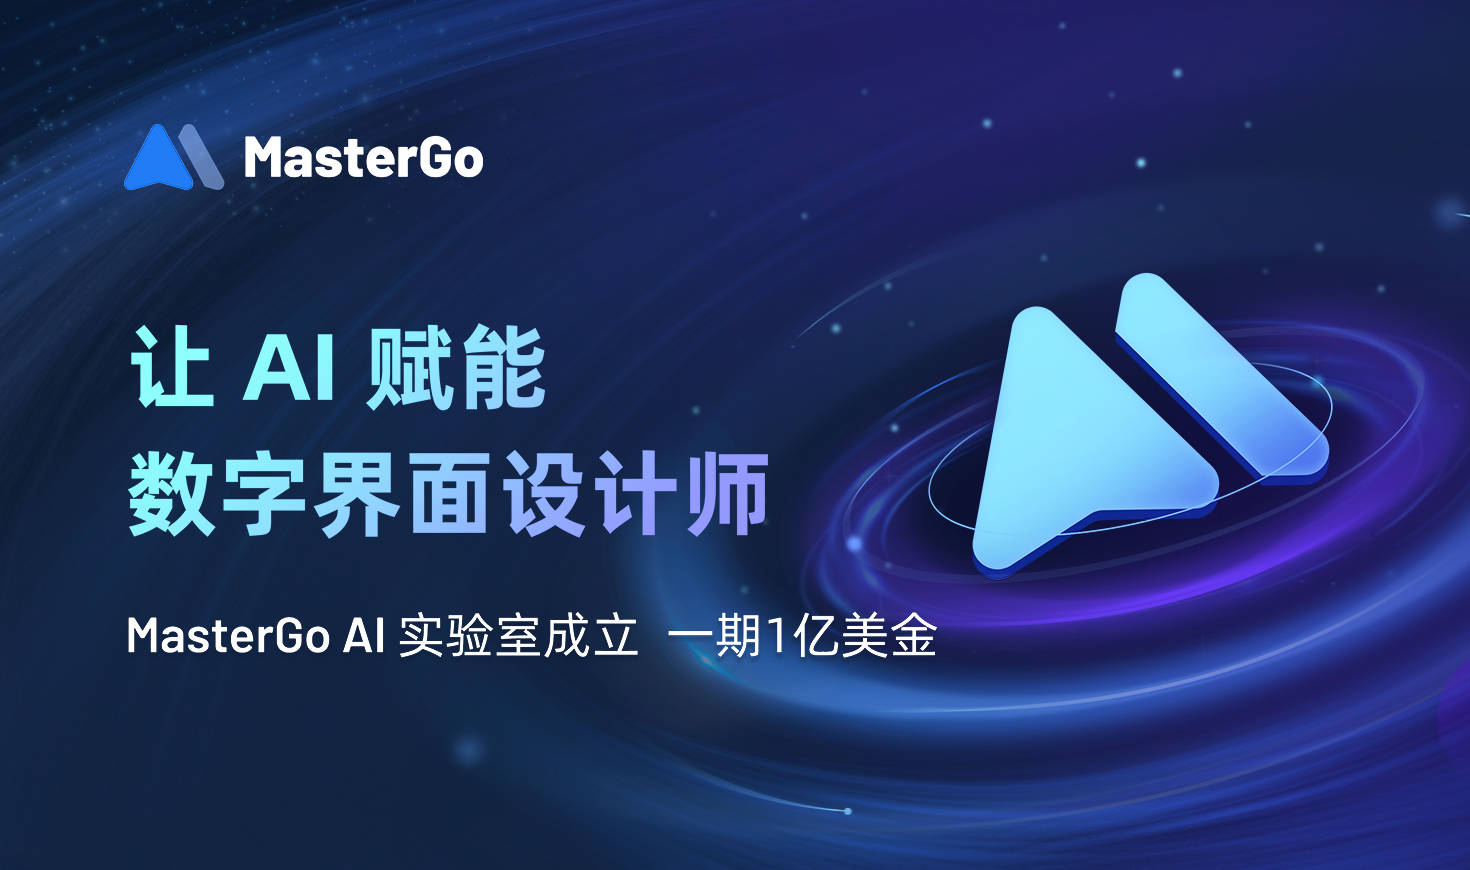 MasterGo成立AI實驗室，一期投入1億美金，讓AI賦能數字界面設計師